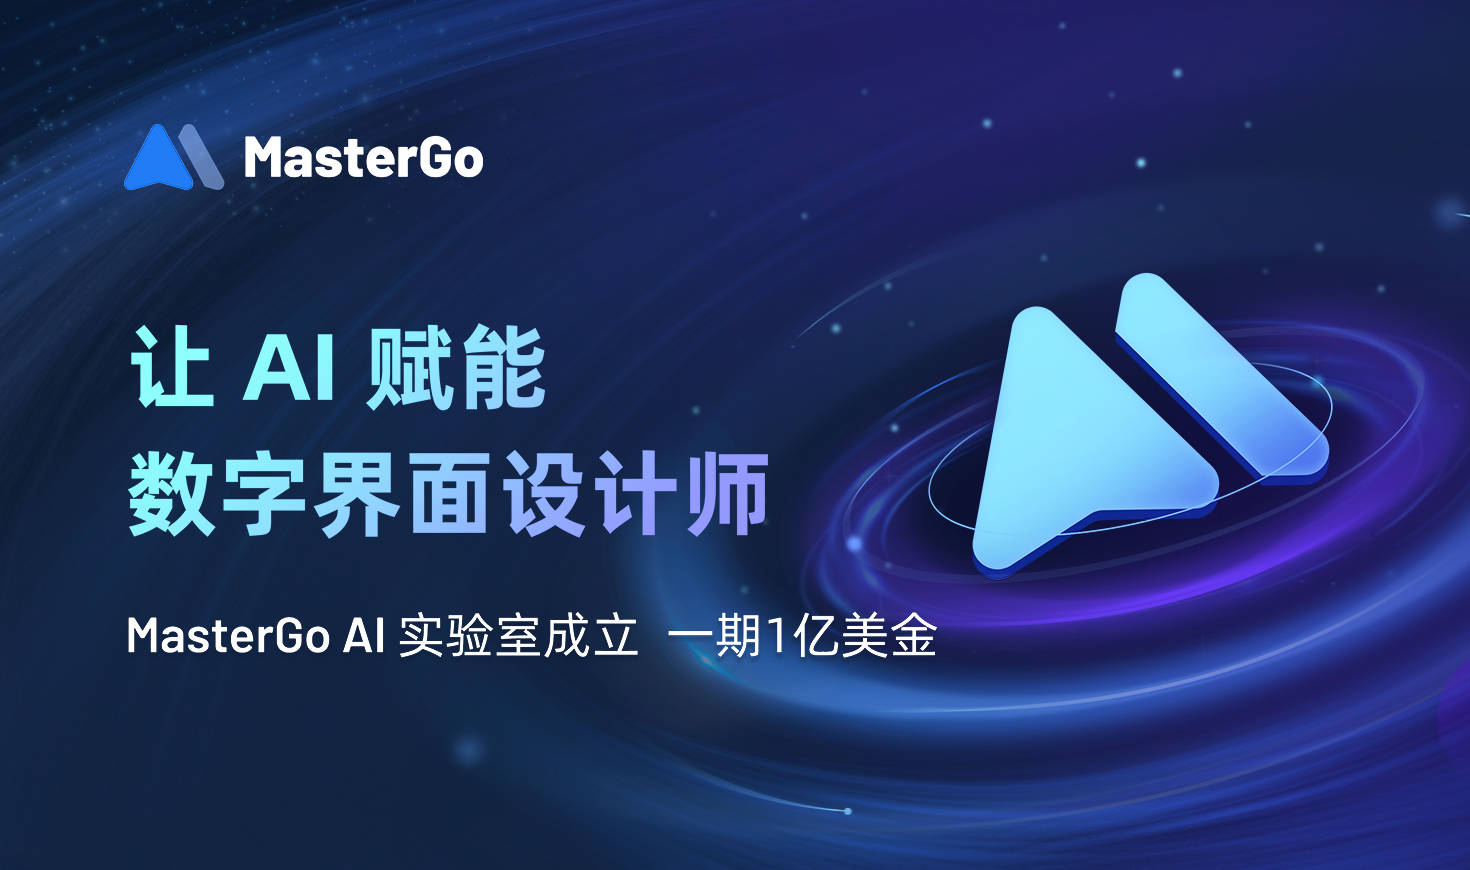 MasterGo成立AI實驗室，一期投入1億美金，讓AI賦能數字界面設計師